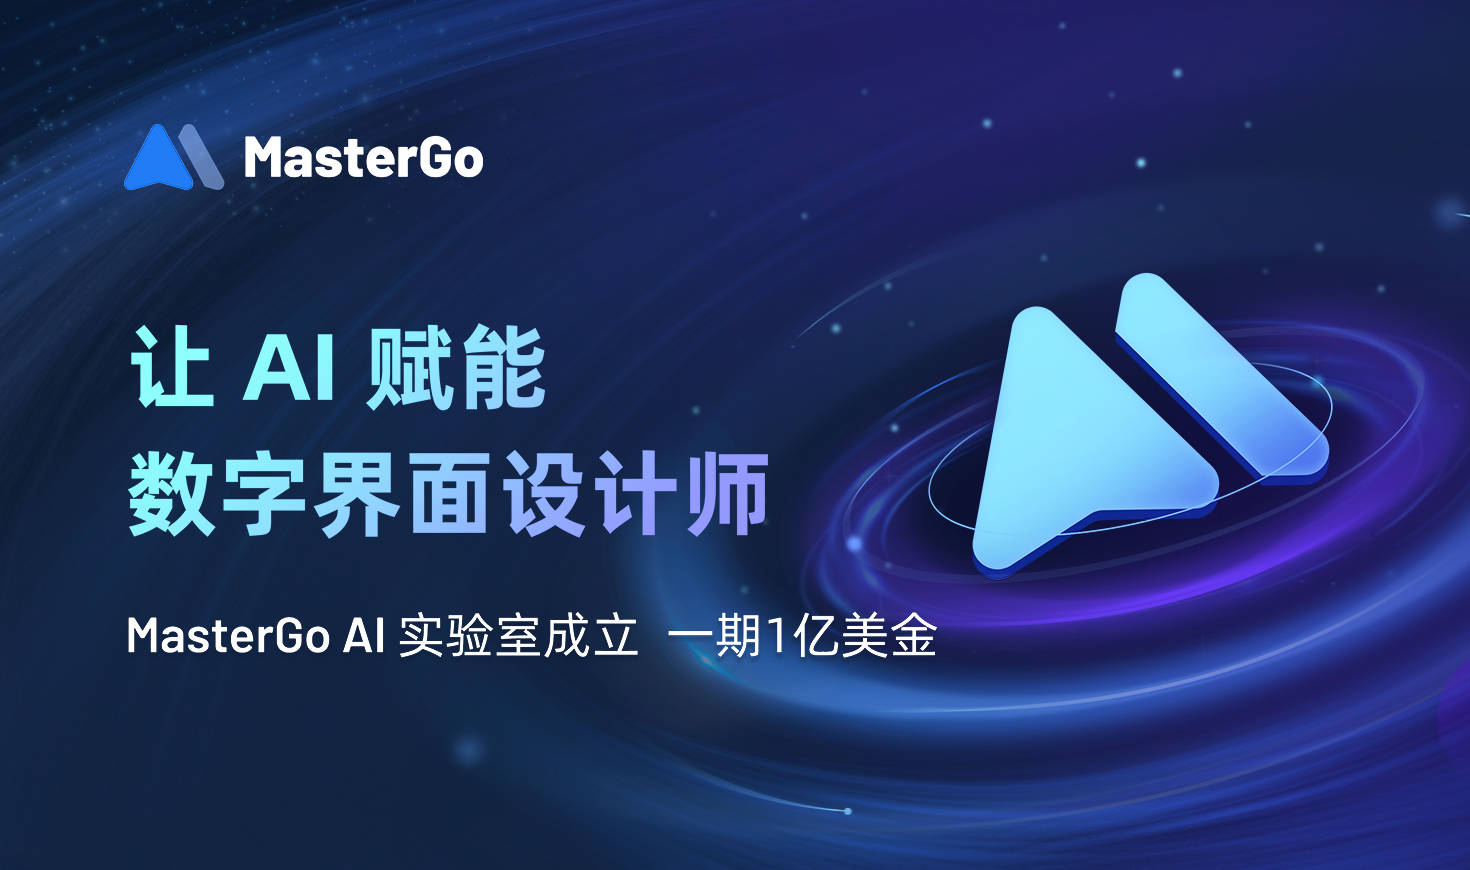 MasterGo成立AI實驗室，一期投入1億美金，讓AI賦能數字界面設計師